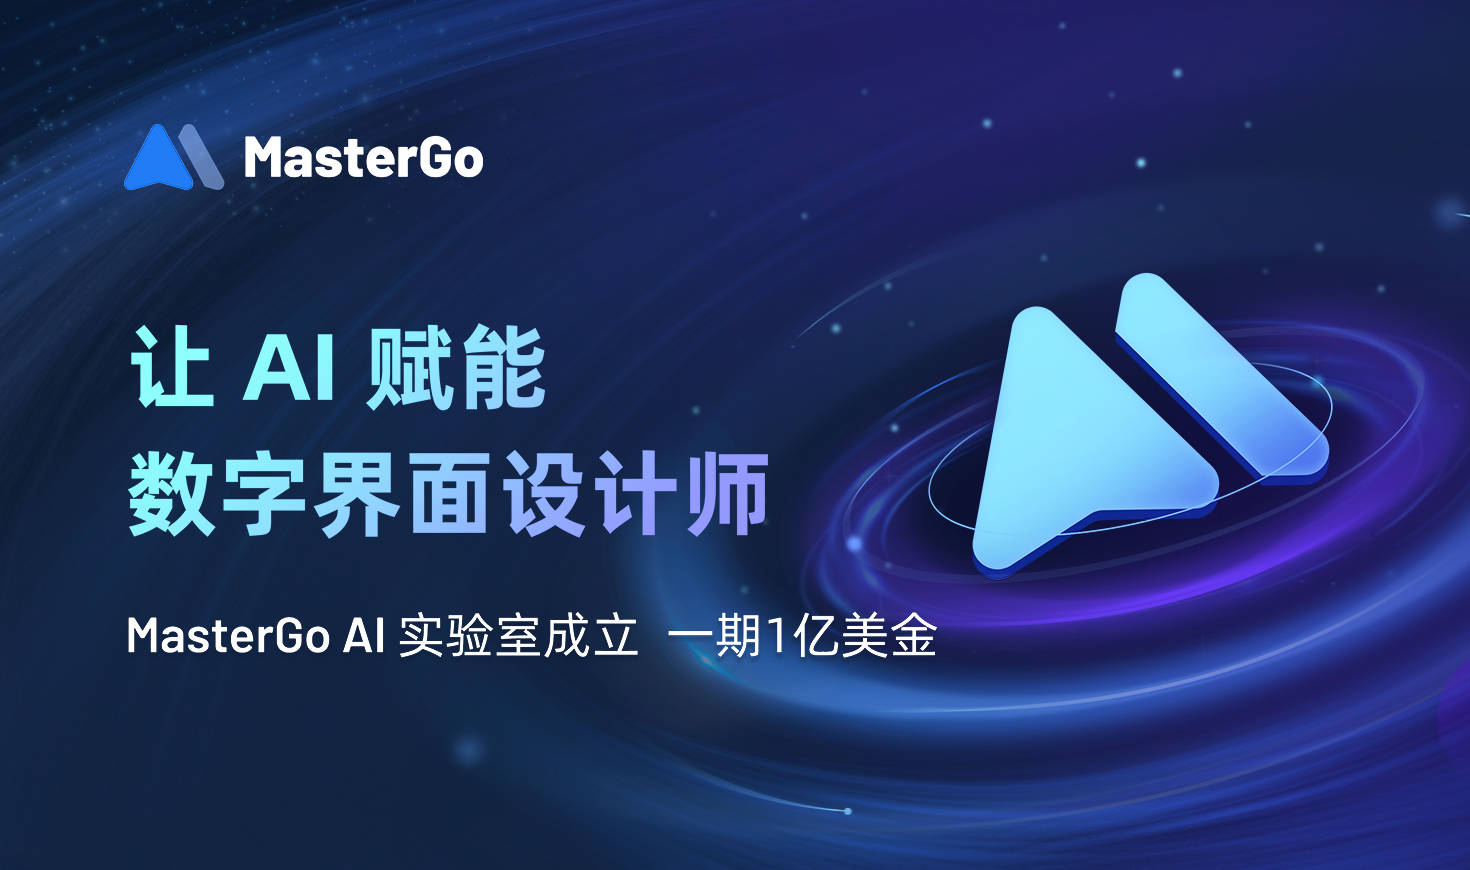 MasterGo成立AI實驗室，一期投入1億美金，讓AI賦能數字界面設計師